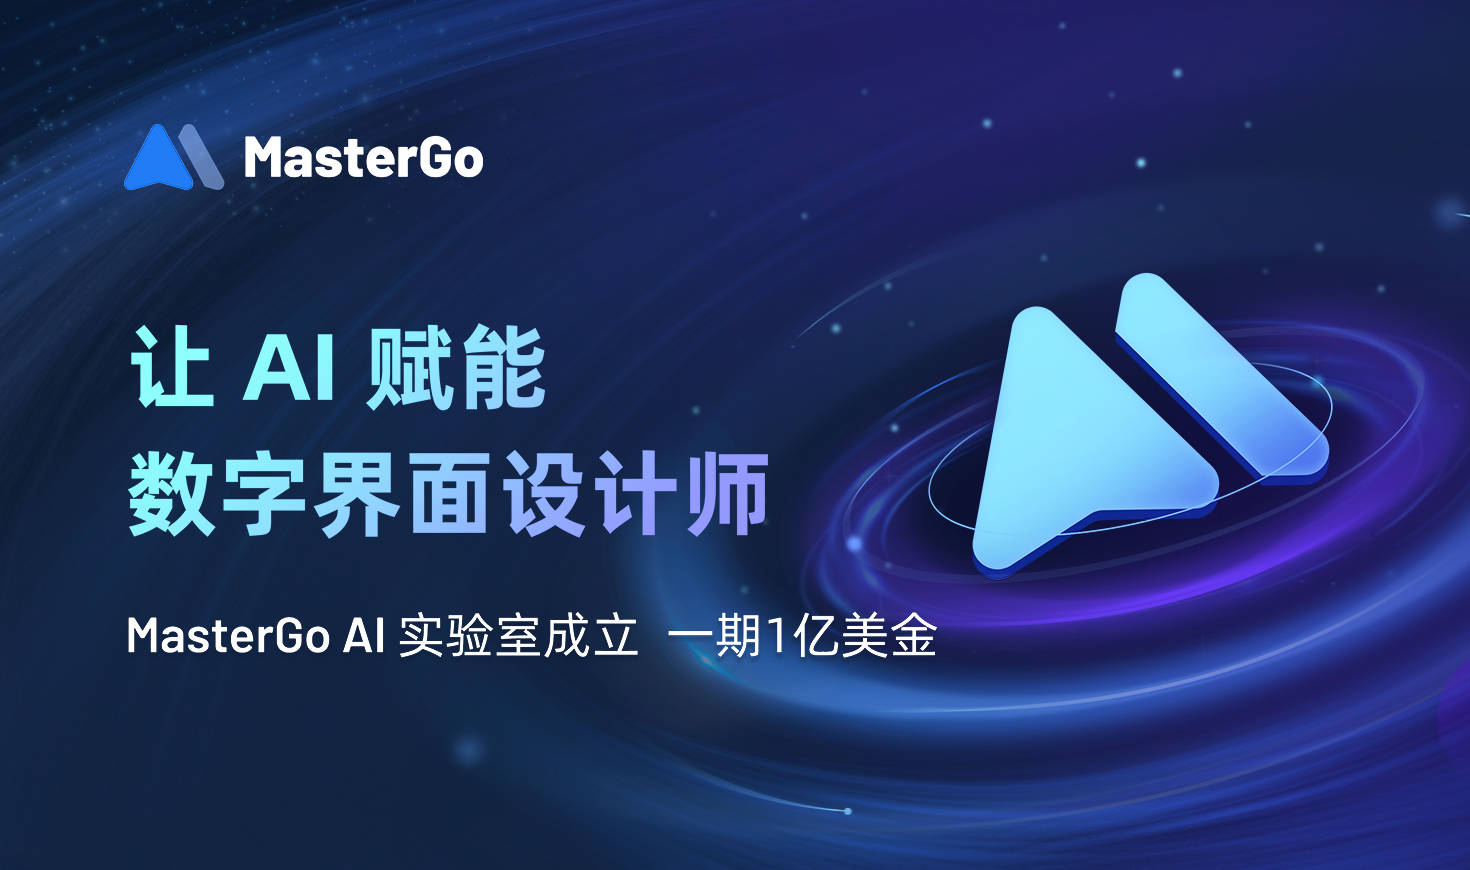 MasterGo成立AI實驗室，一期投入1億美金，讓AI賦能數字界面設計師